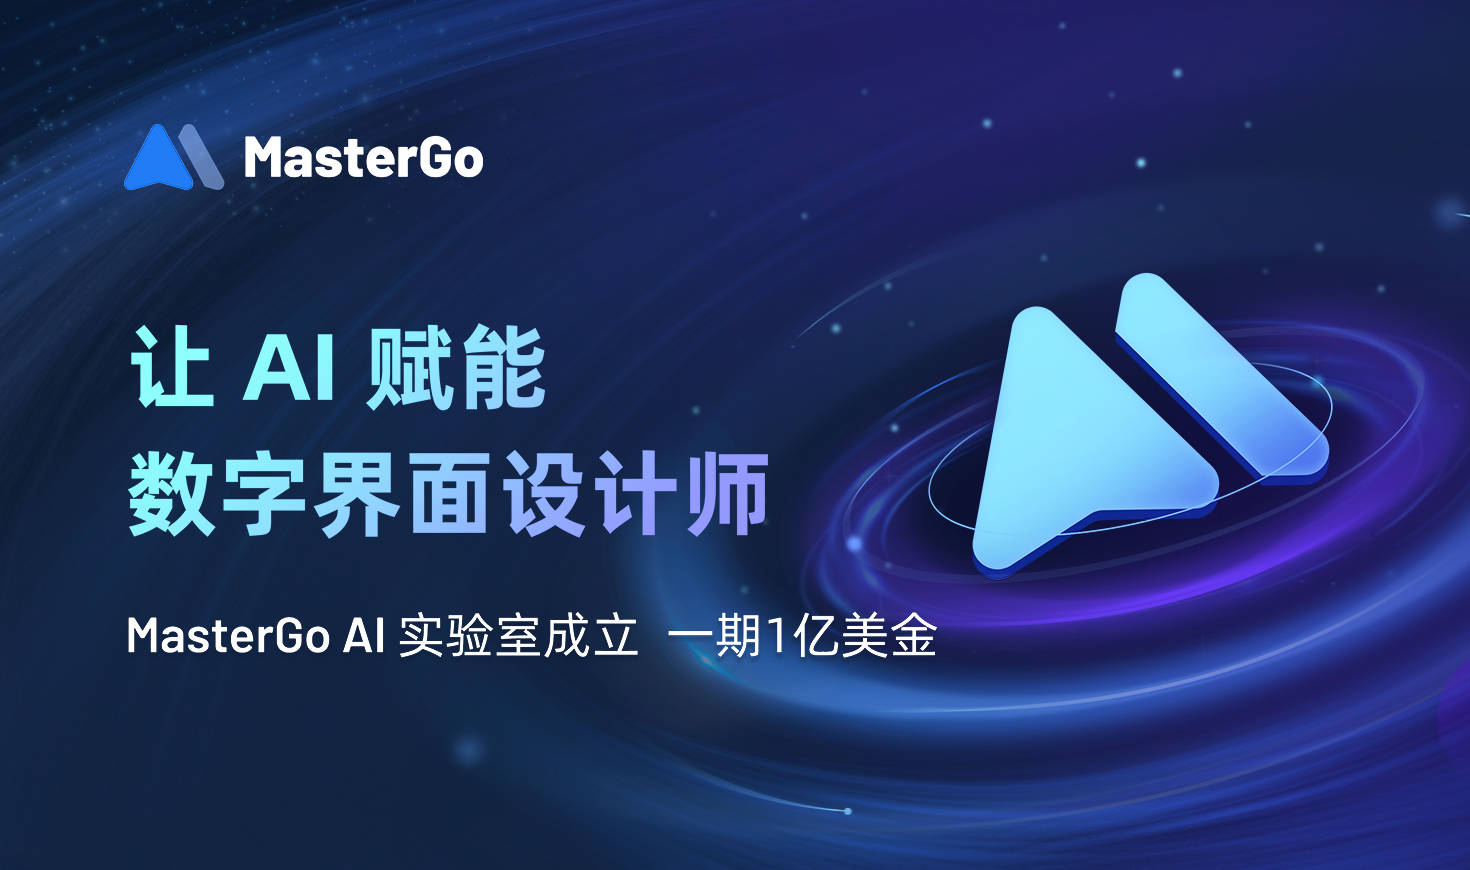 MasterGo成立AI實驗室，一期投入1億美金，讓AI賦能數字界面設計師